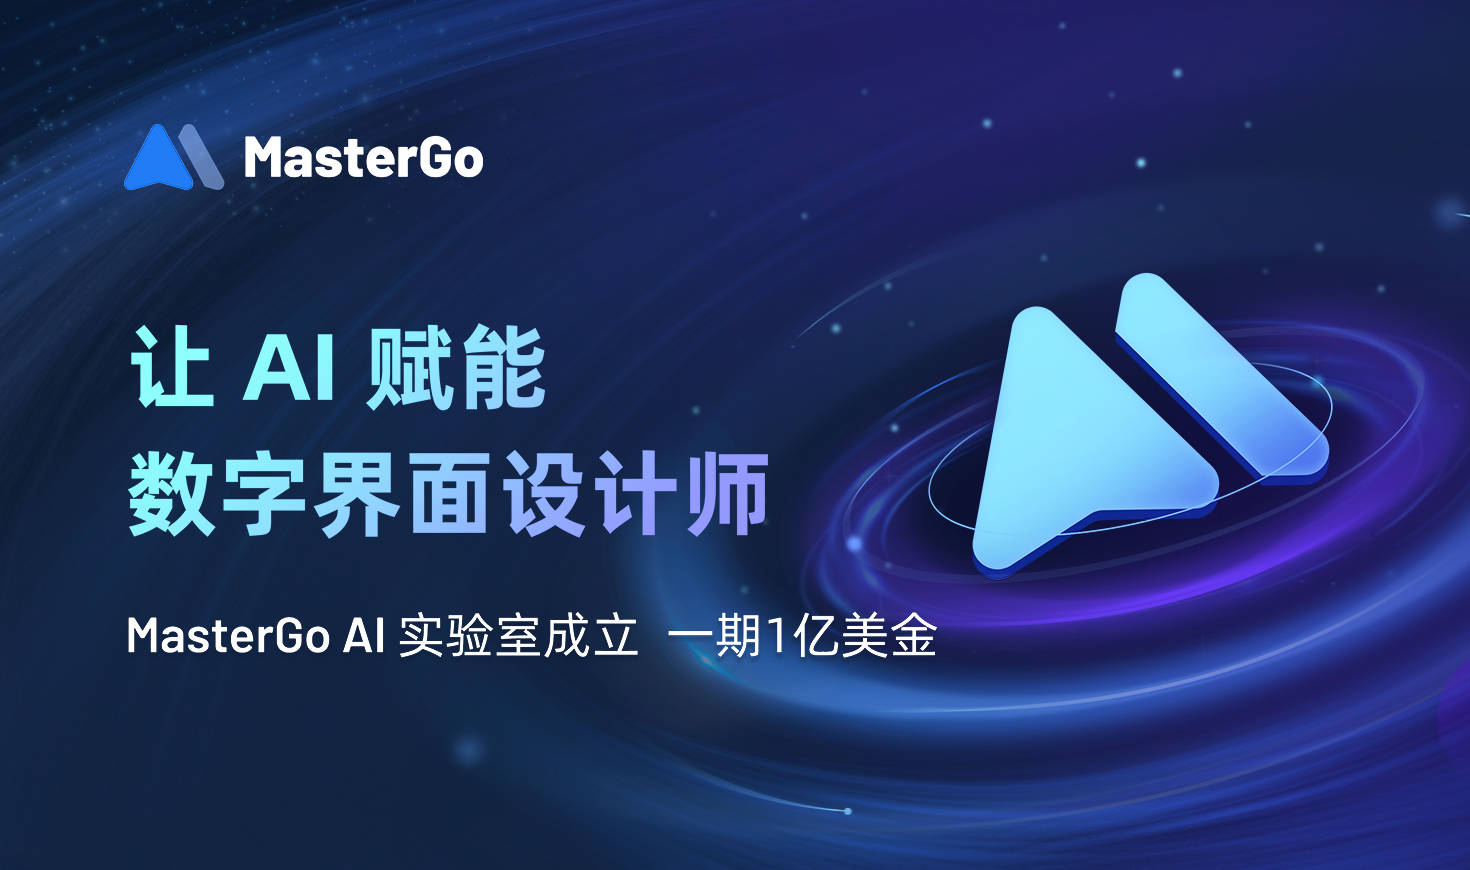 MasterGo成立AI實驗室，一期投入1億美金，讓AI賦能數字界面設計師